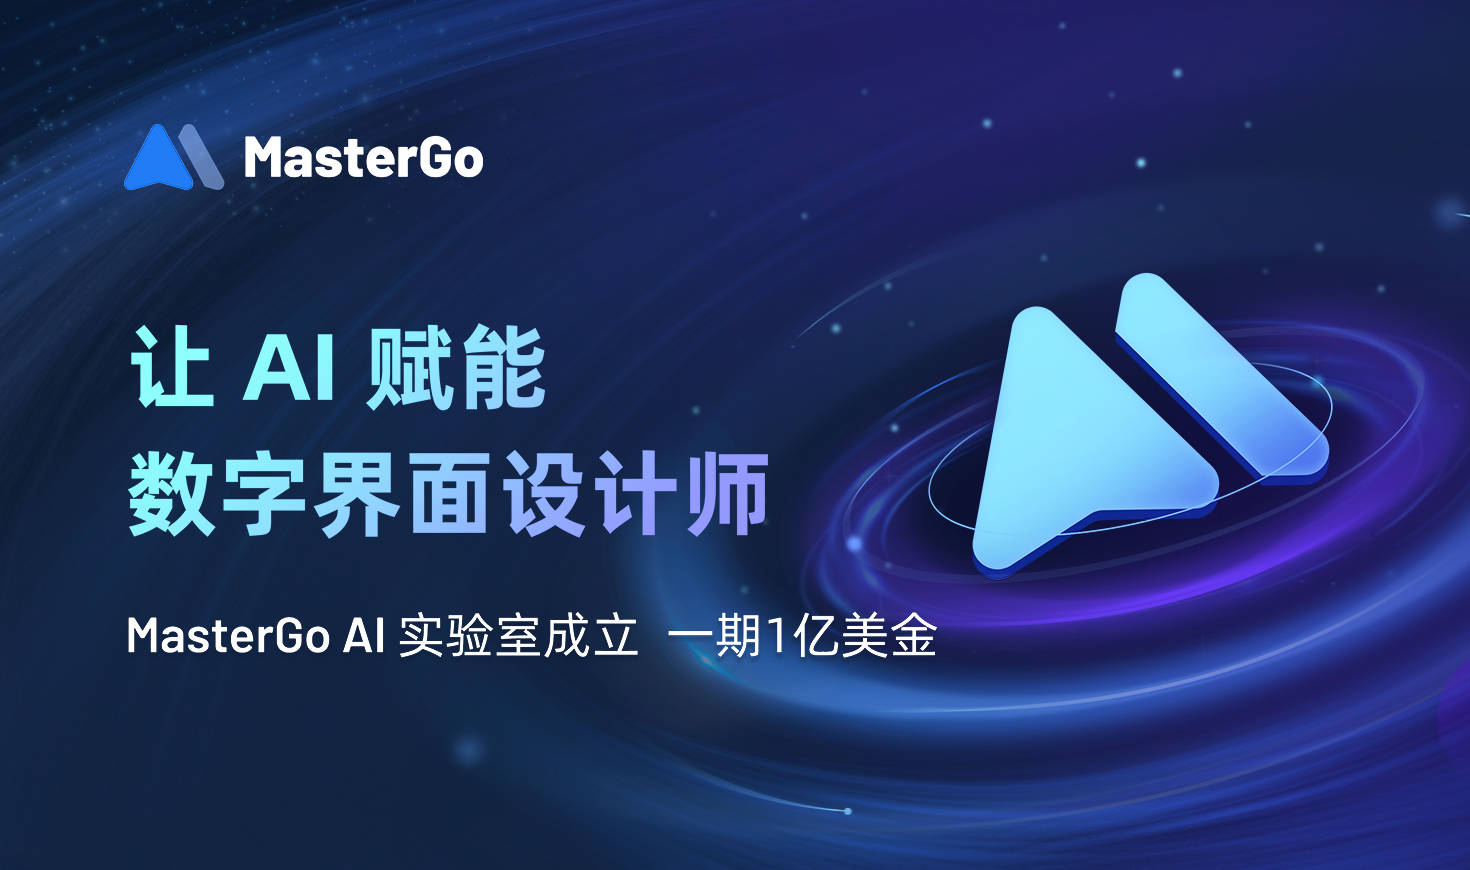 MasterGo成立AI實驗室，一期投入1億美金，讓AI賦能數字界面設計師